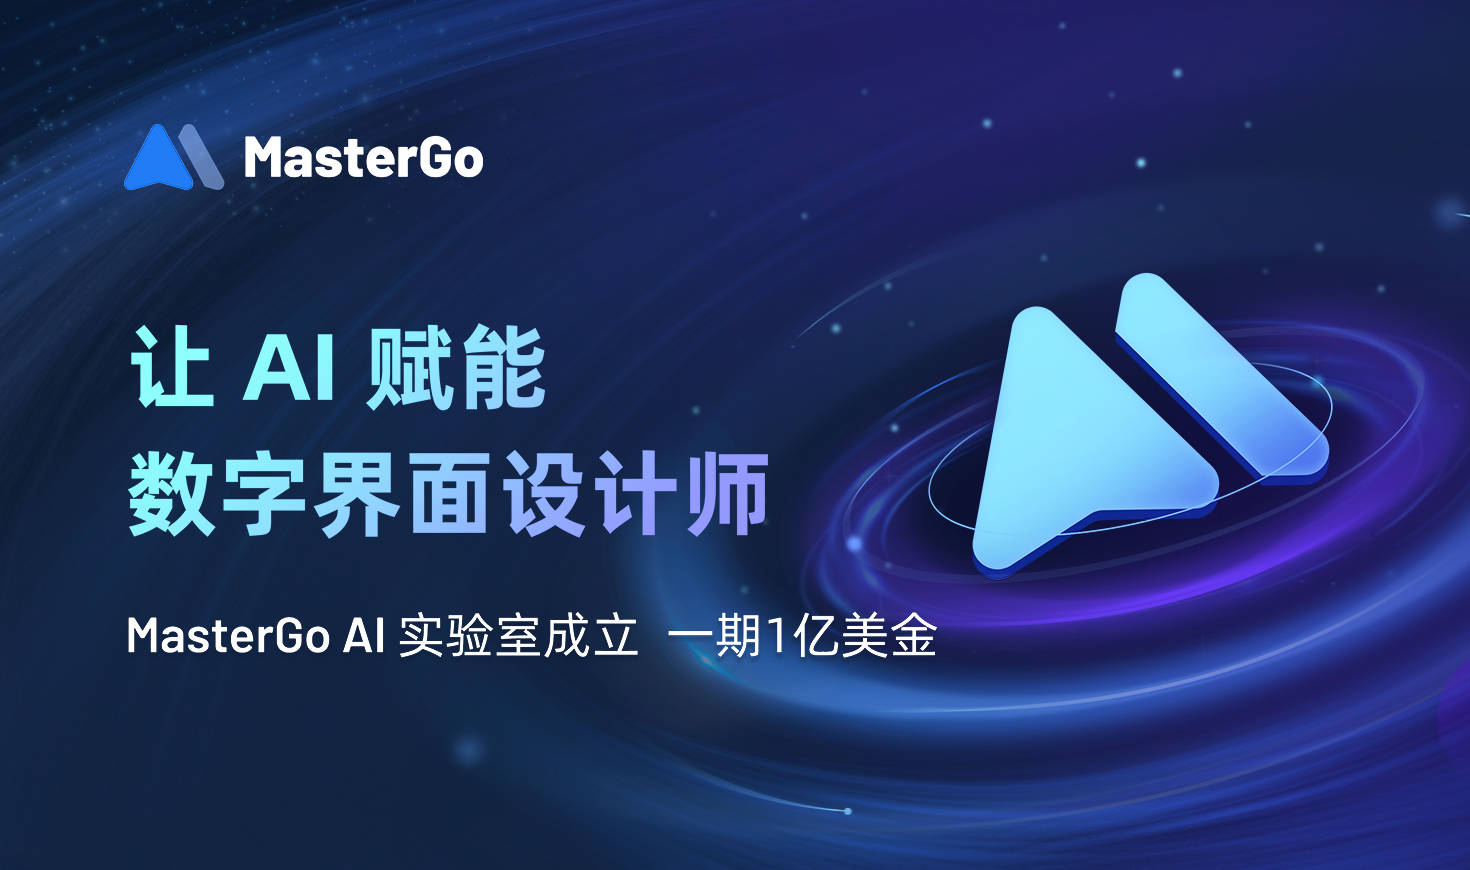 MasterGo成立AI實驗室，一期投入1億美金，讓AI賦能數字界面設計師